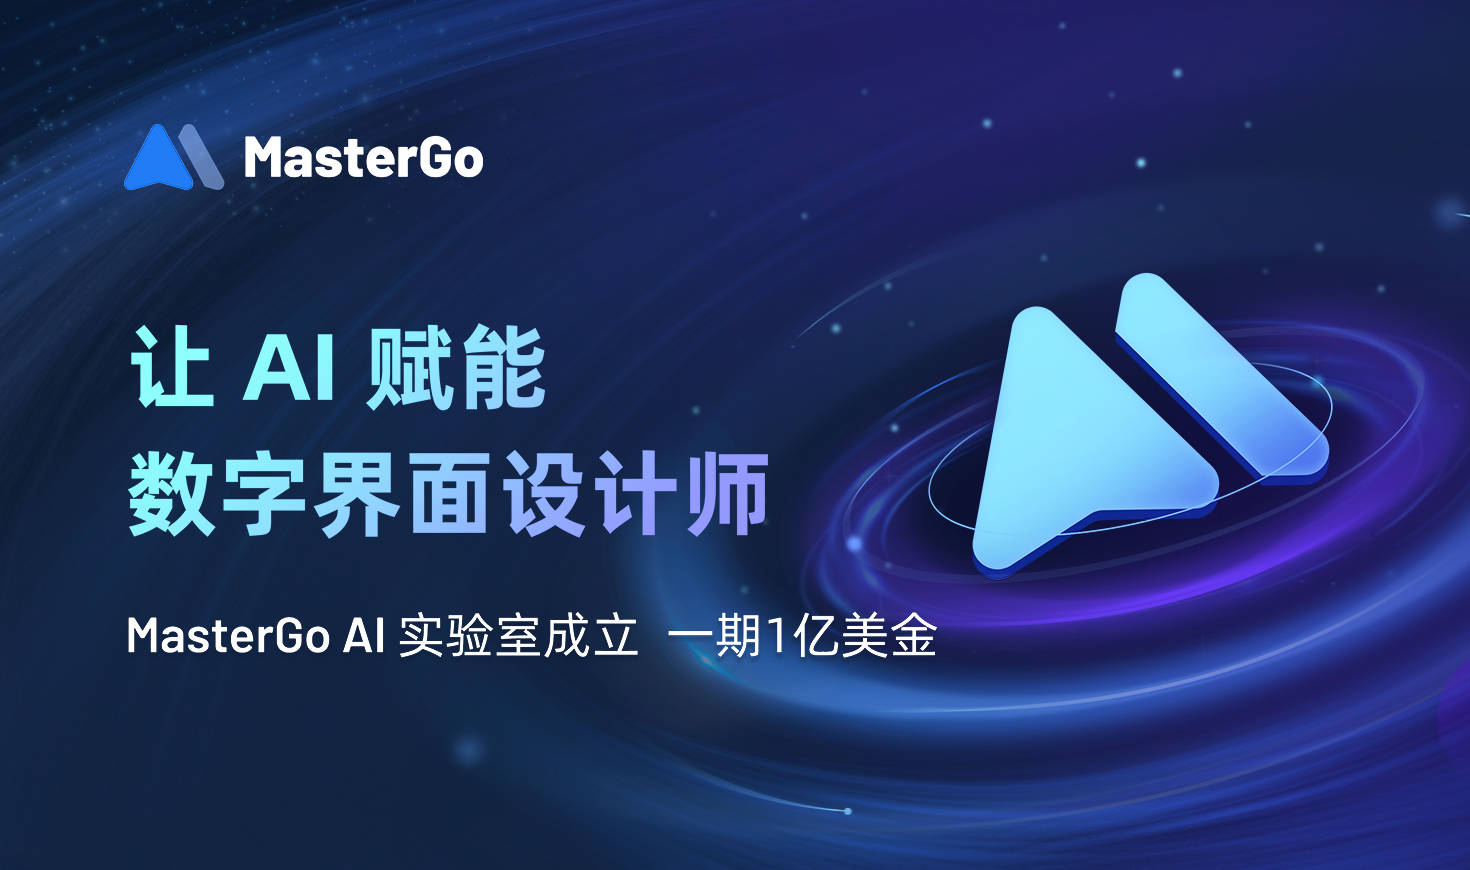 MasterGo成立AI實驗室，一期投入1億美金，讓AI賦能數字界面設計師